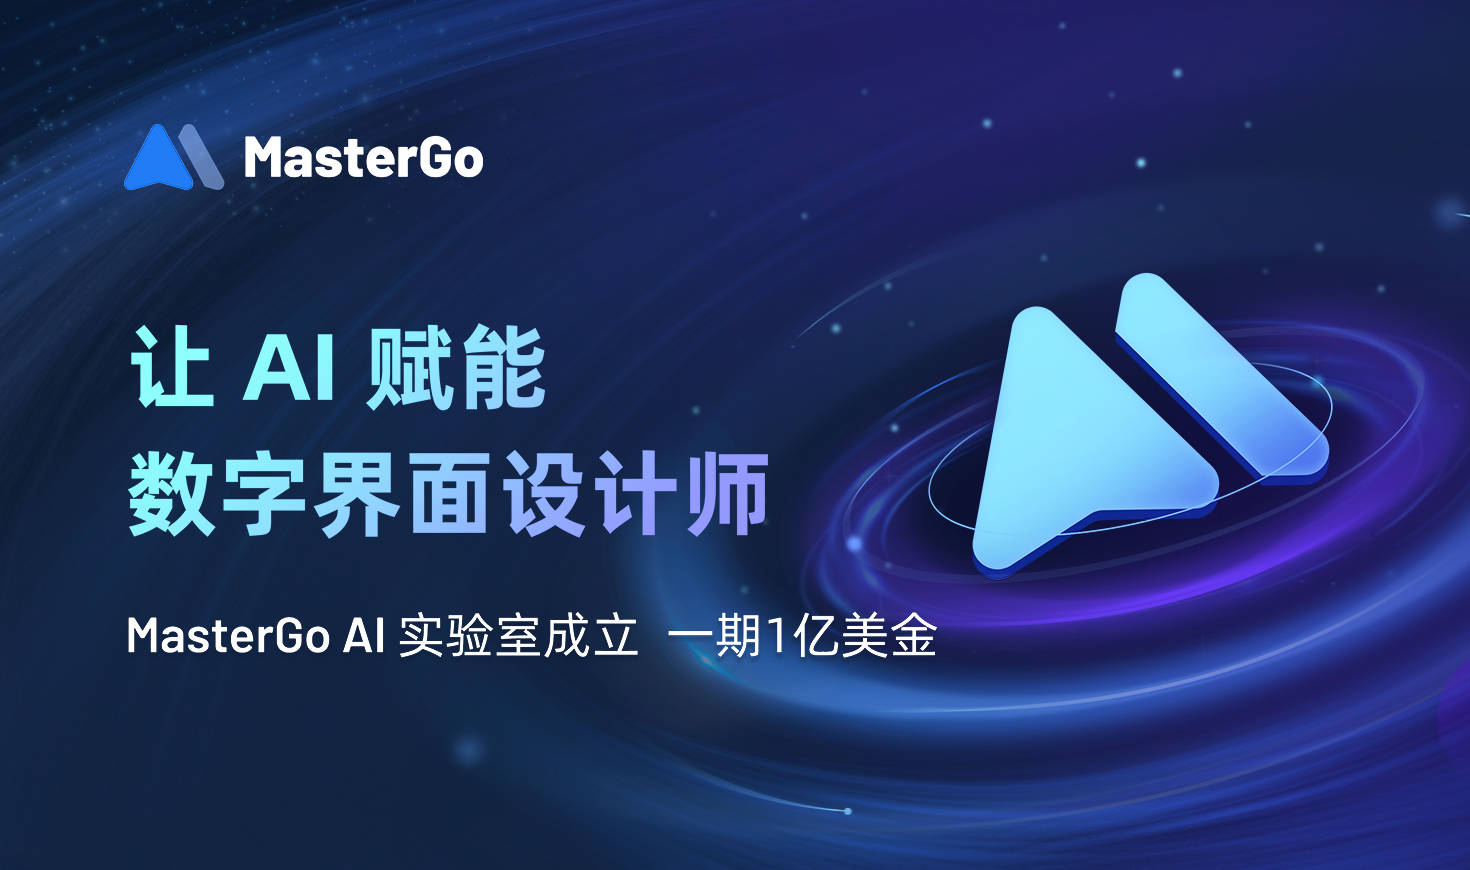 MasterGo成立AI實驗室，一期投入1億美金，讓AI賦能數字界面設計師